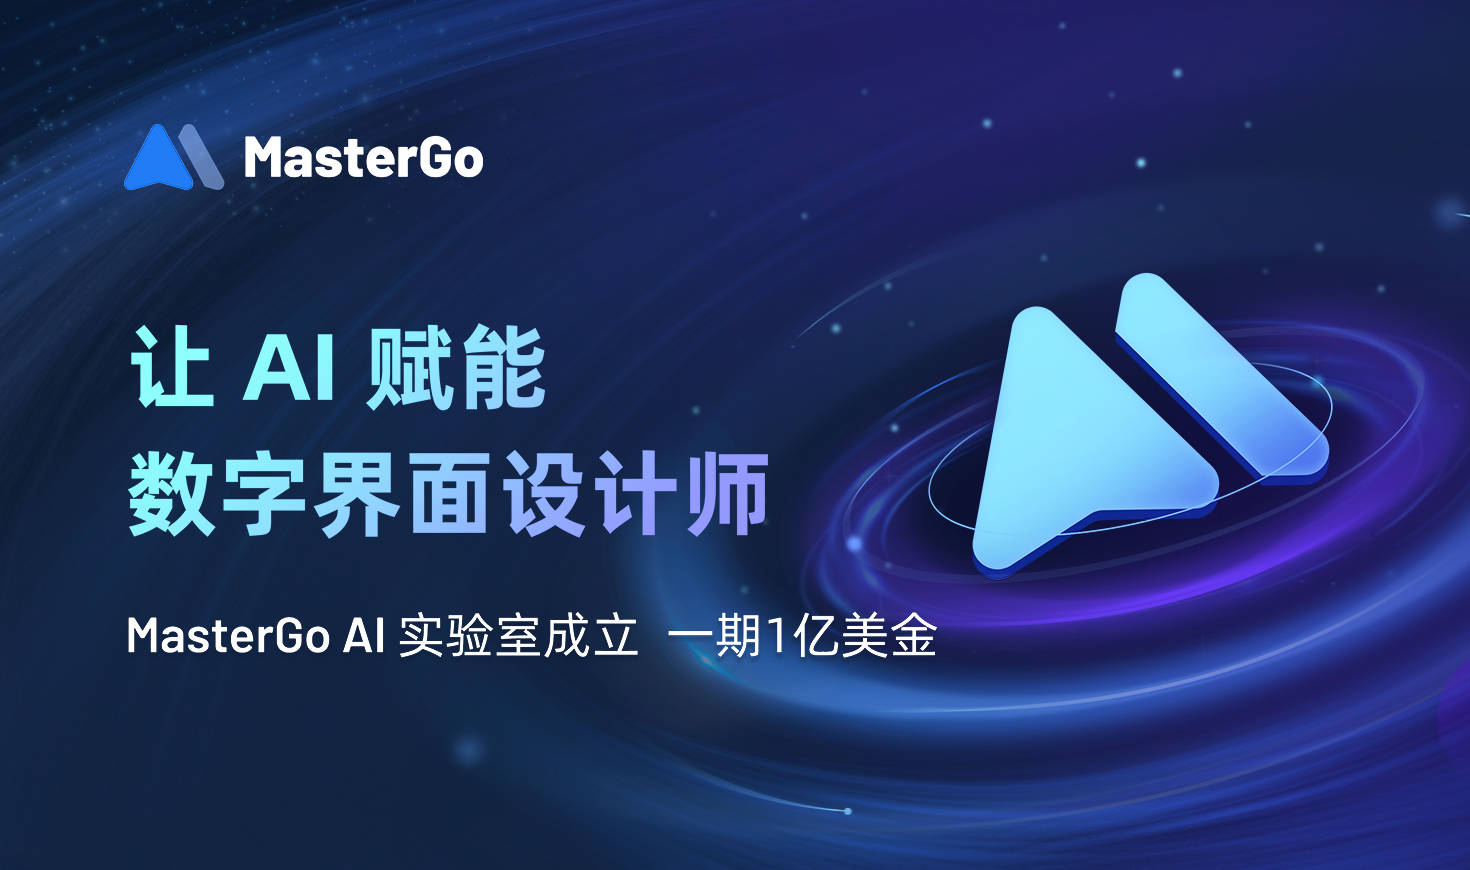 MasterGo成立AI實驗室，一期投入1億美金，讓AI賦能數字界面設計師